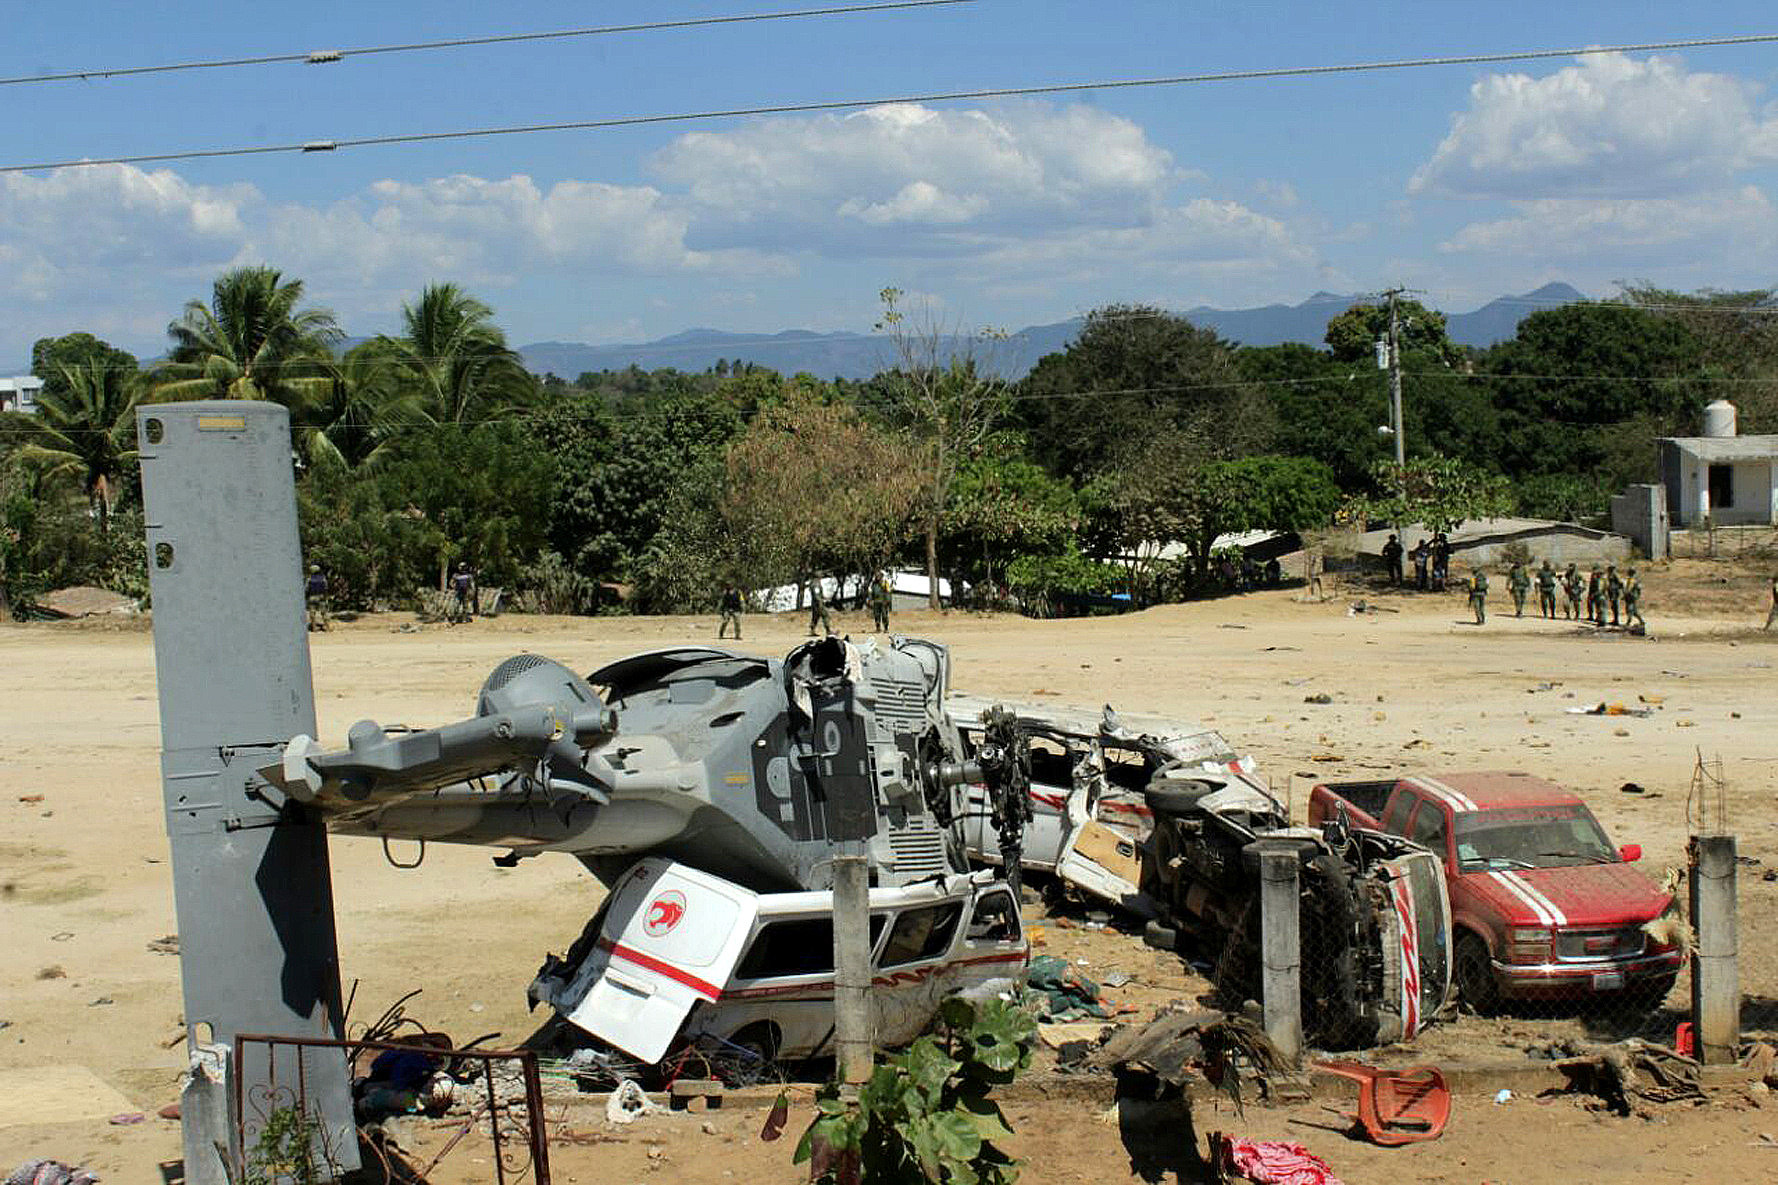 Sube a 14 la cifra de muertos por desplome de helicóptero en el sur de México